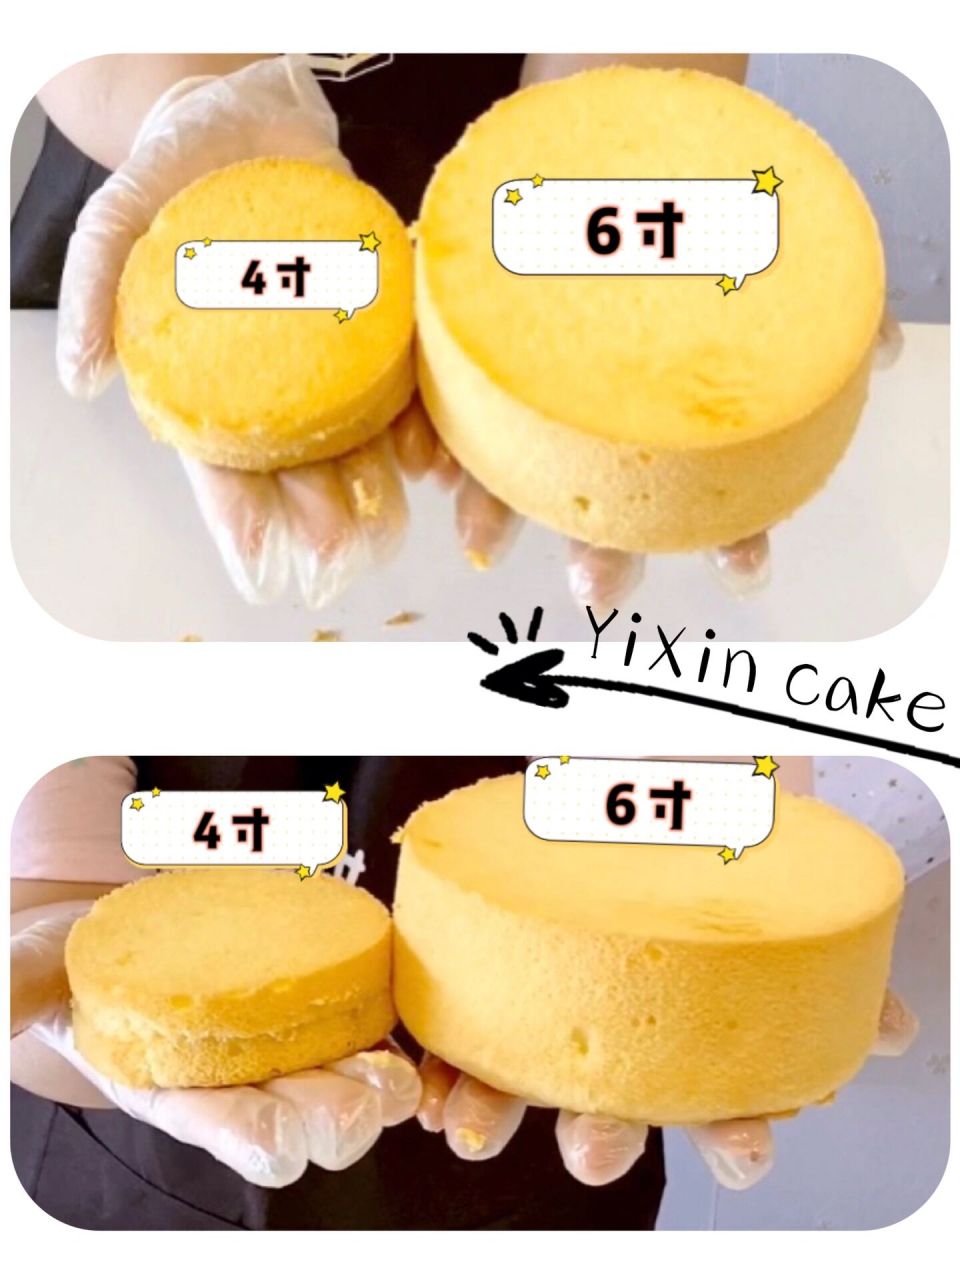 6寸蛋糕多大图片对比图片